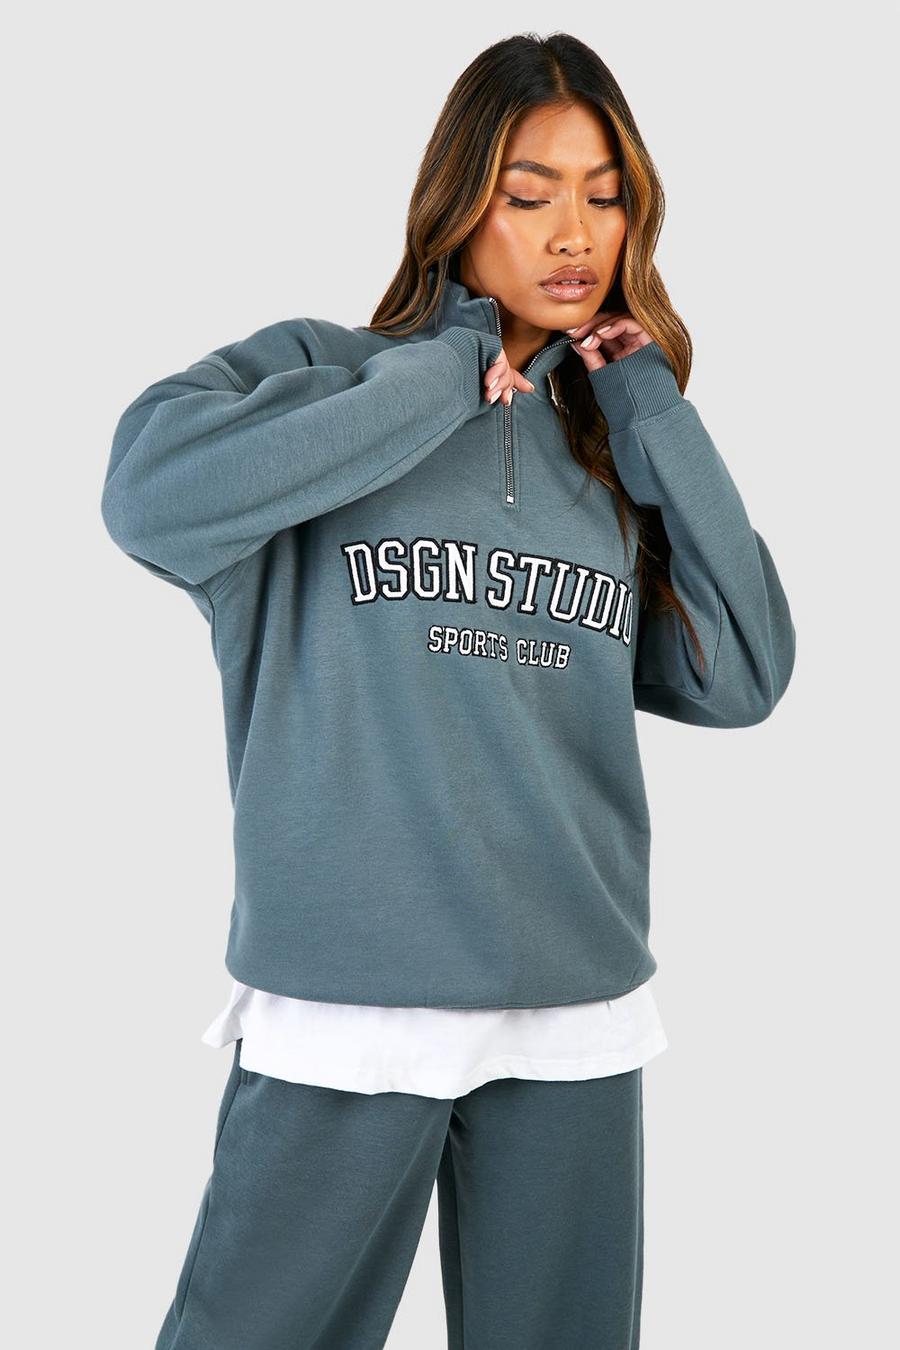 Oversize Sweatshirt mit Dsgn Studio Applikation und halbem Reißverschluss, Sage image number 1